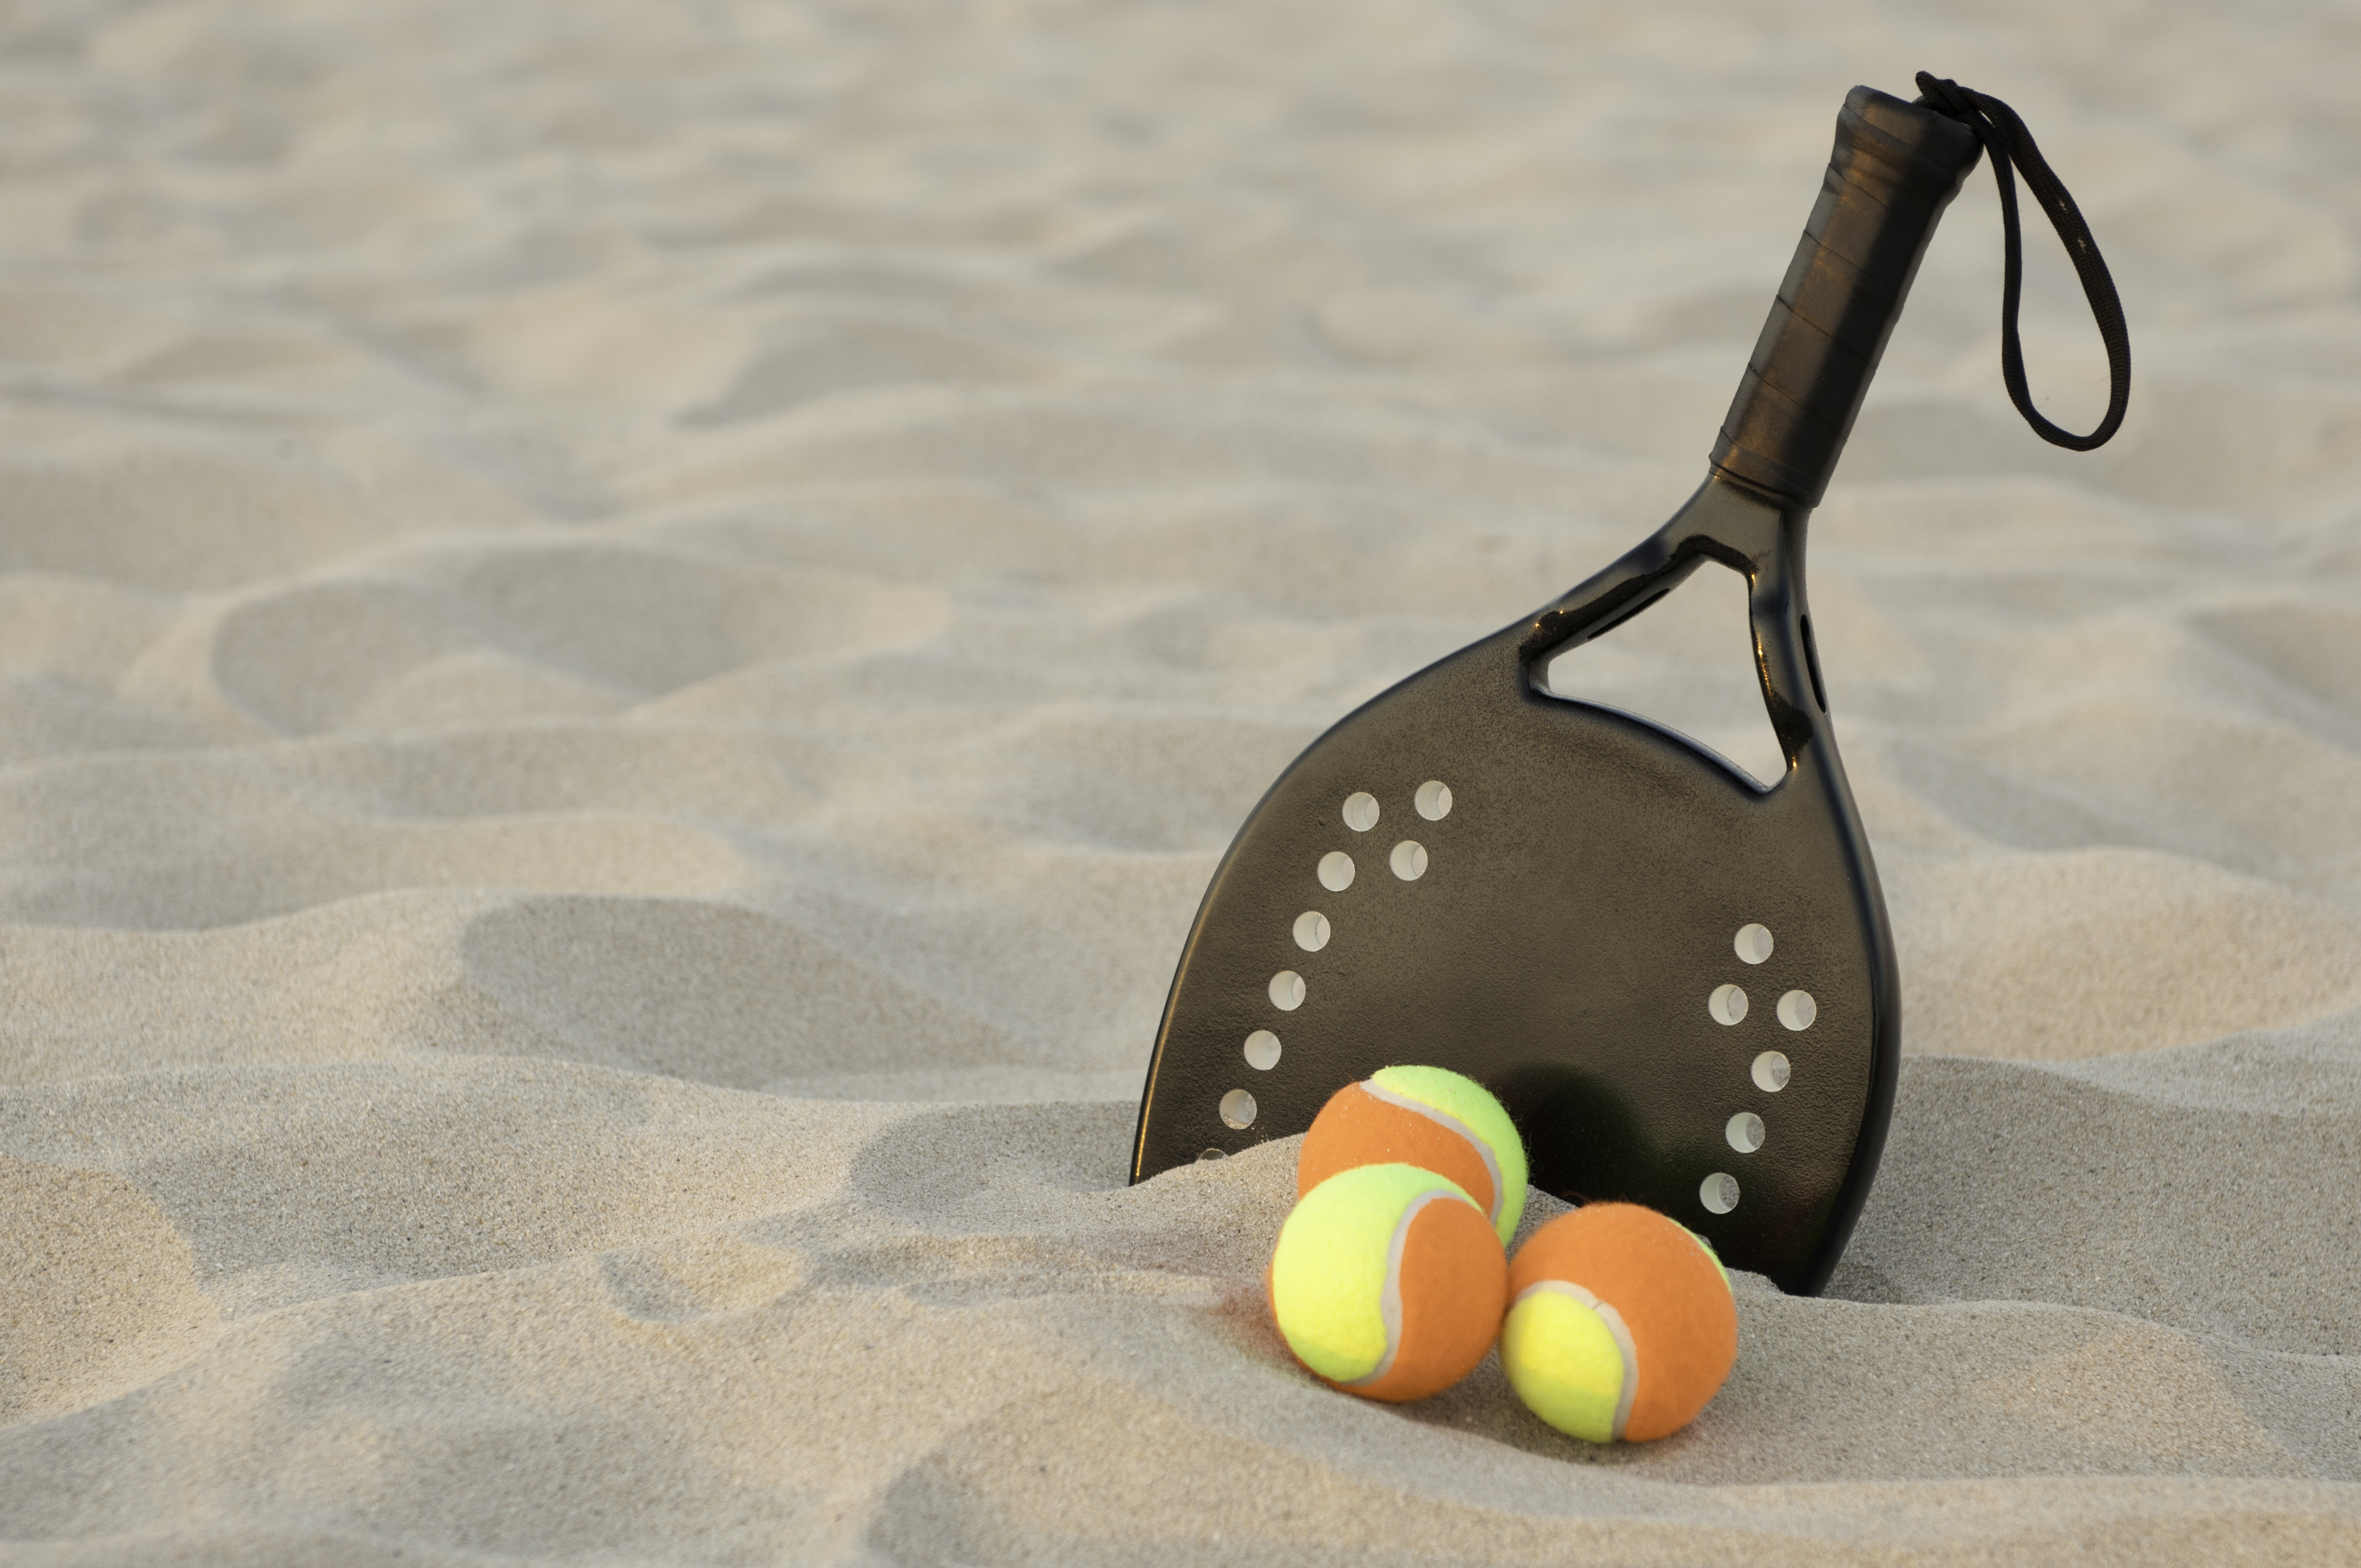 Conheça as regras do Beach Tennis